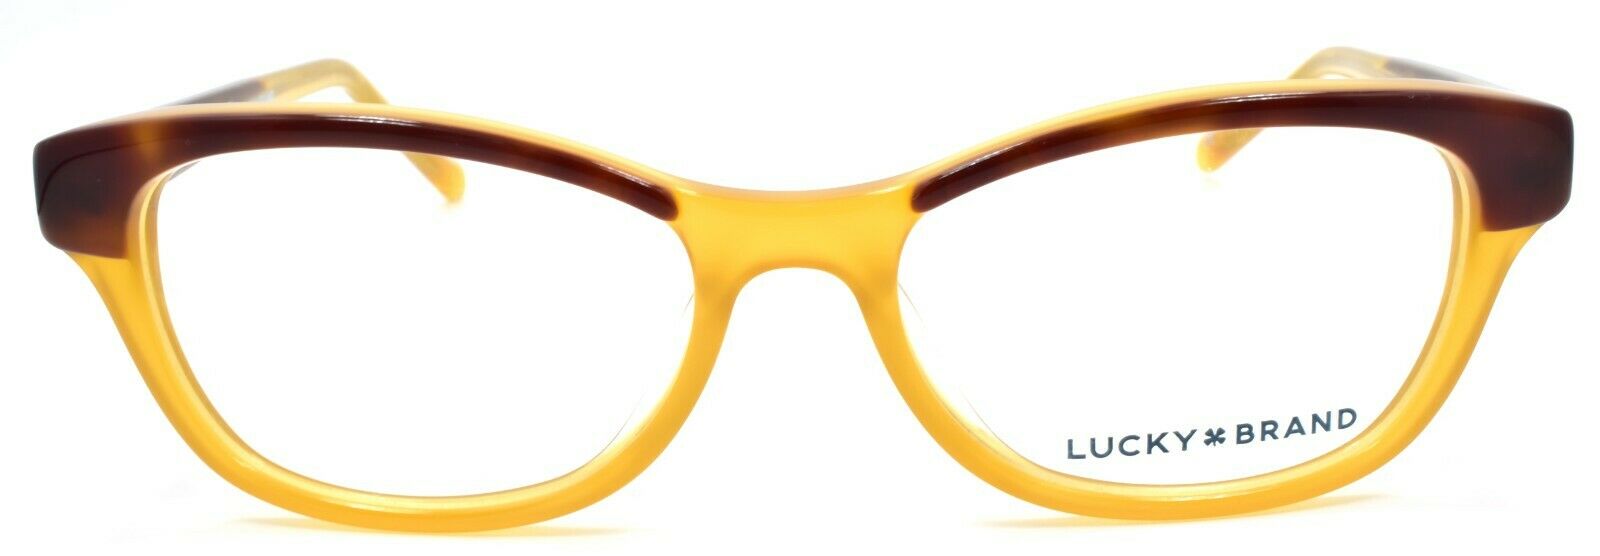 2-LUCKY BRAND D702 Kids Girls Eyeglasses Frames 47-15-130 Tortoise / Honey-751286282108-IKSpecs